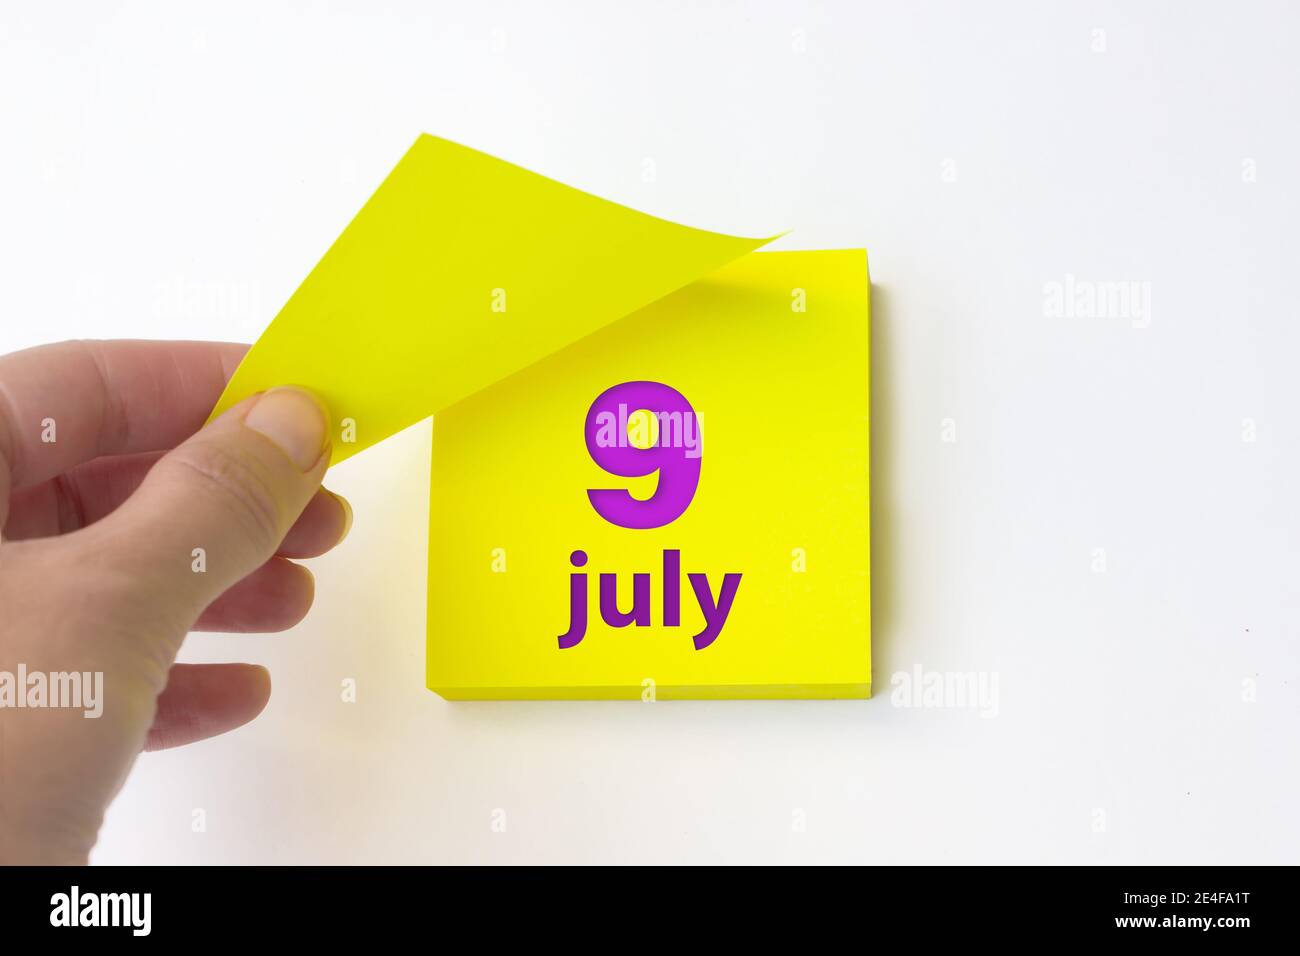 9 juillet. Jour 9 du mois, date du calendrier. La main se défait de la feuille jaune du calendrier. Concept mois d'été, jour de l'année Banque D'Images